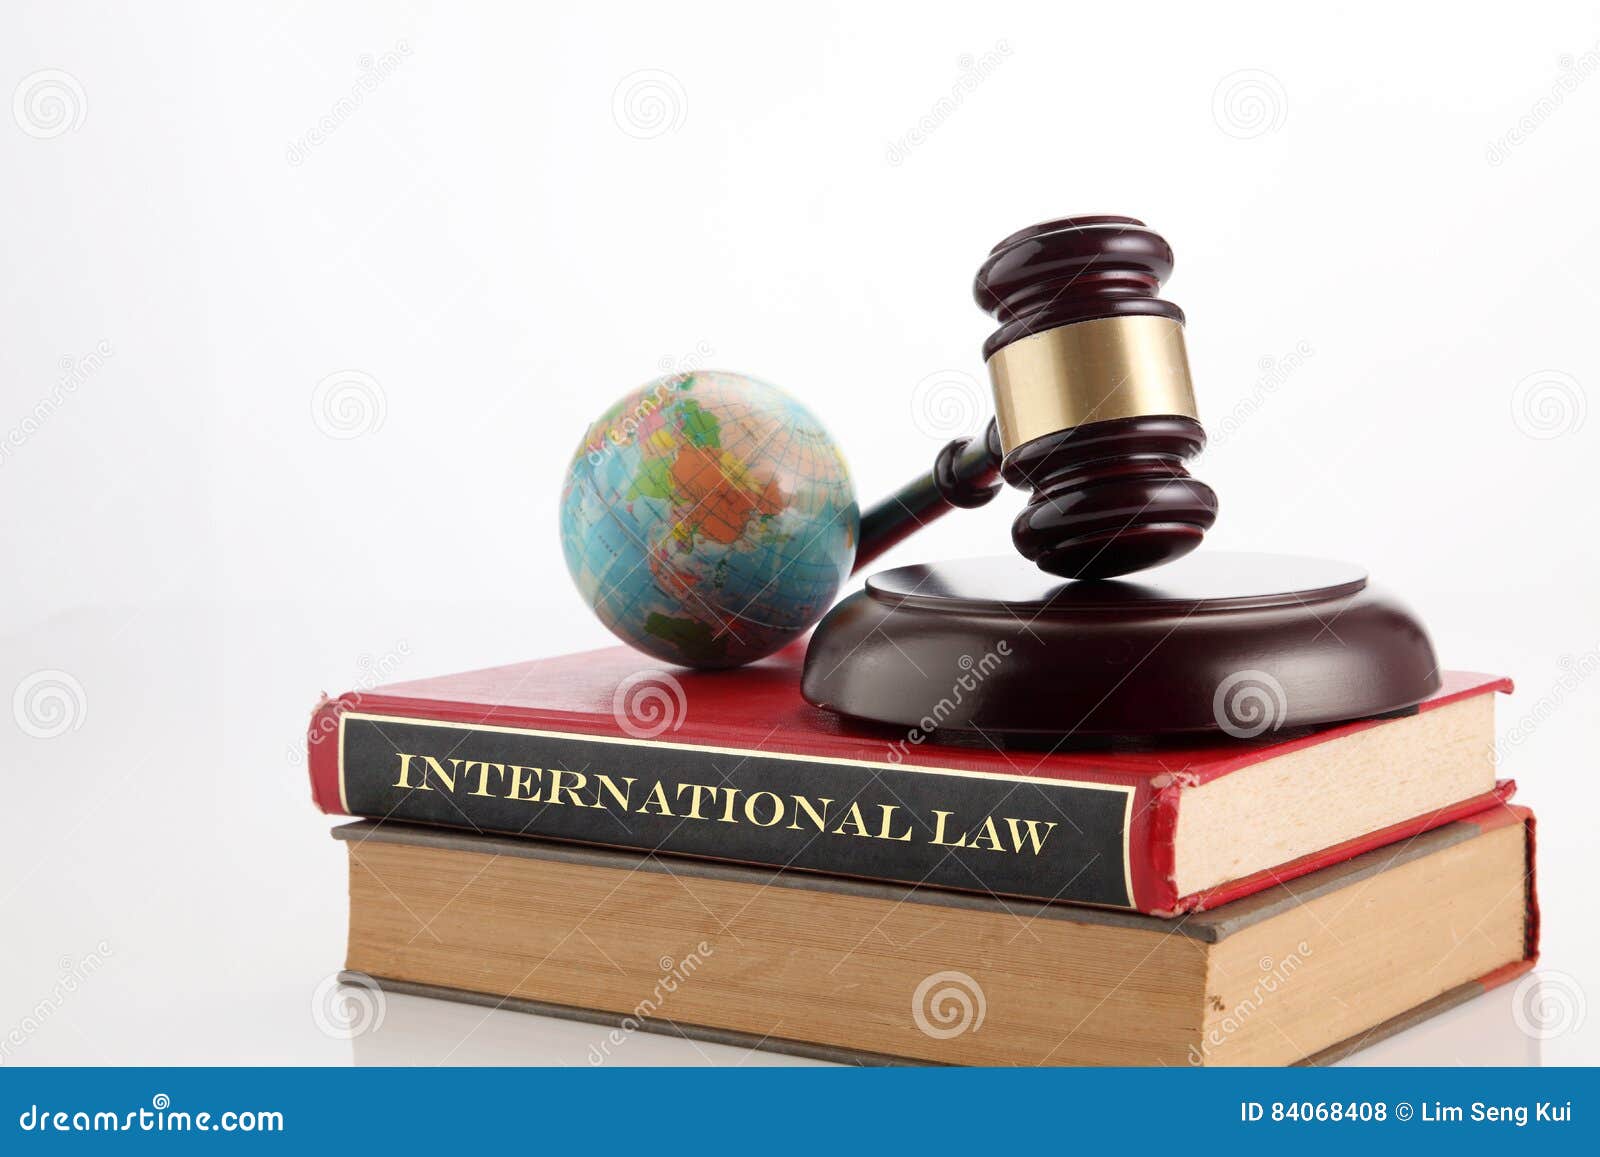 Международное право 2019. Международное право. Международное законодательство. Международное право картинки. Право и Международное право.